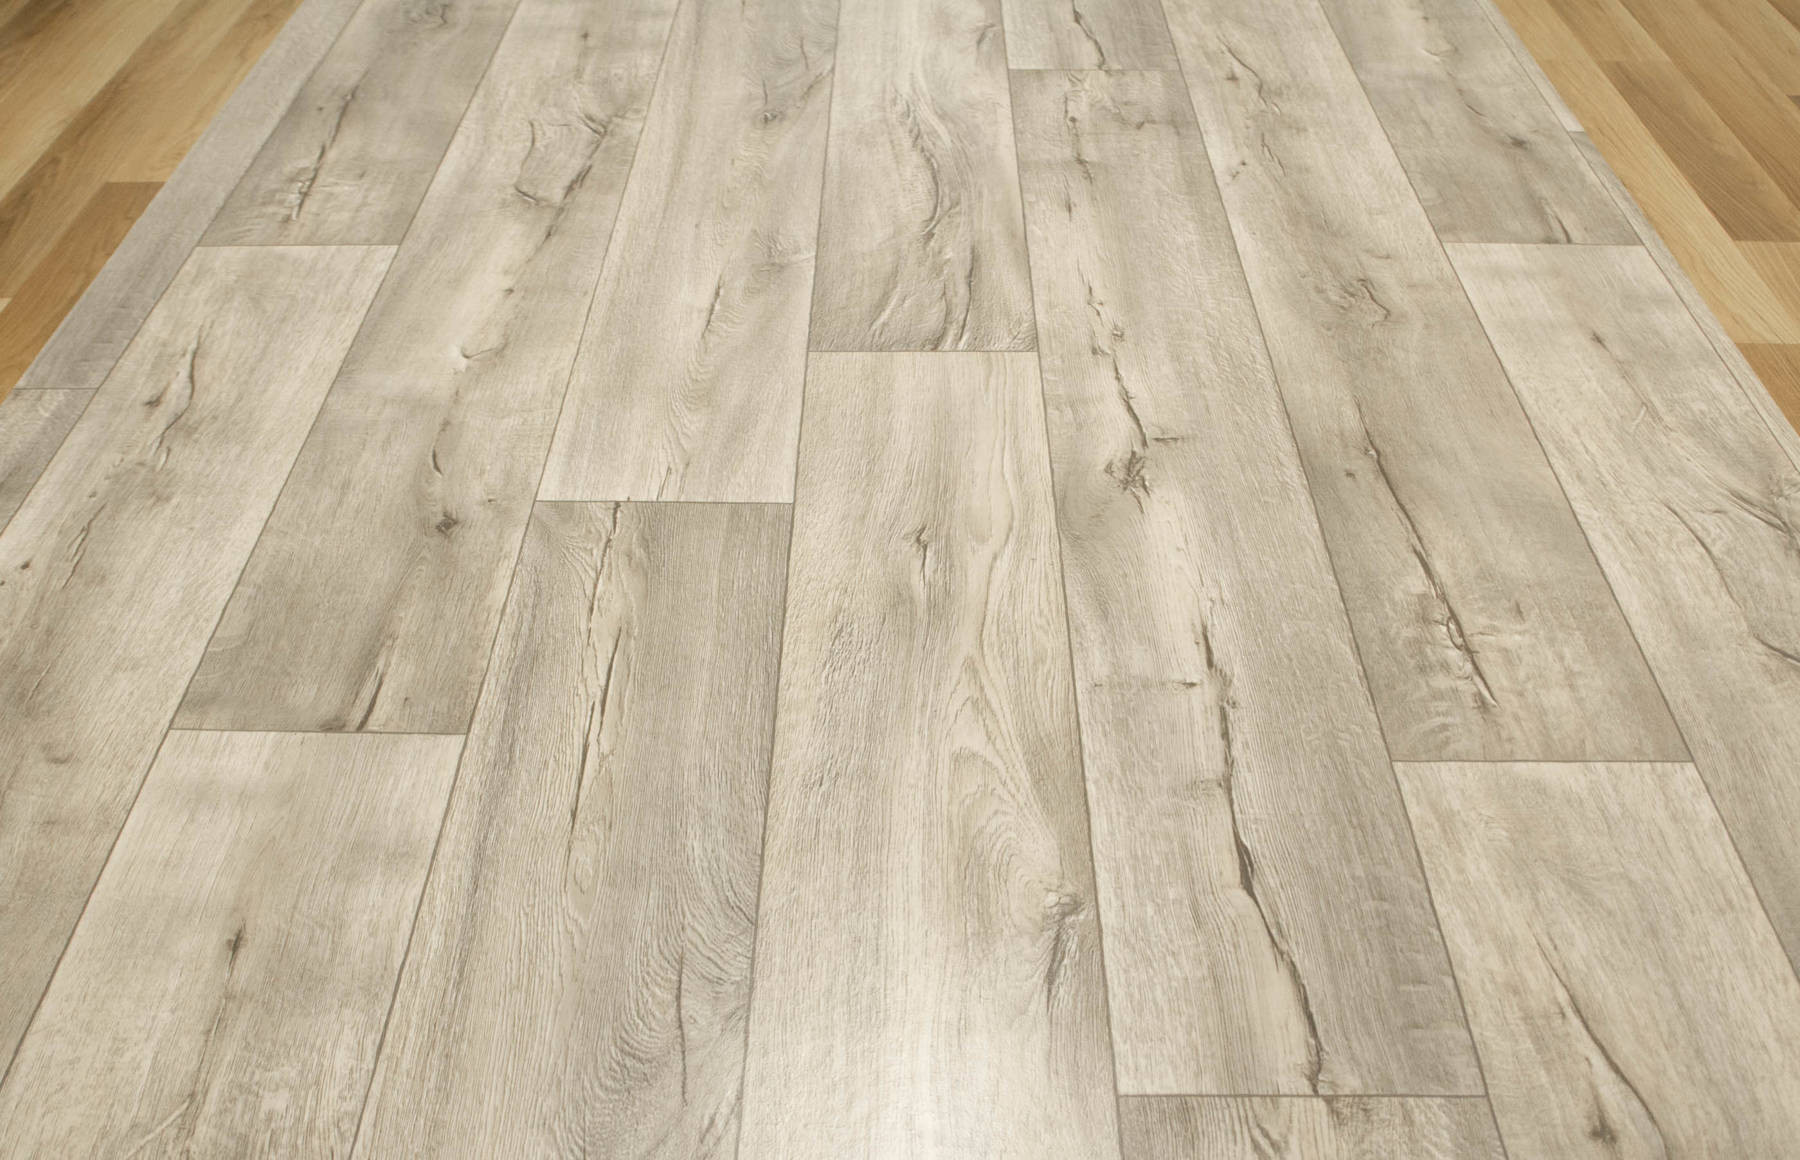 PVC podlaha Bartesa Cracked Oak 990M šedá / krémová / béžová